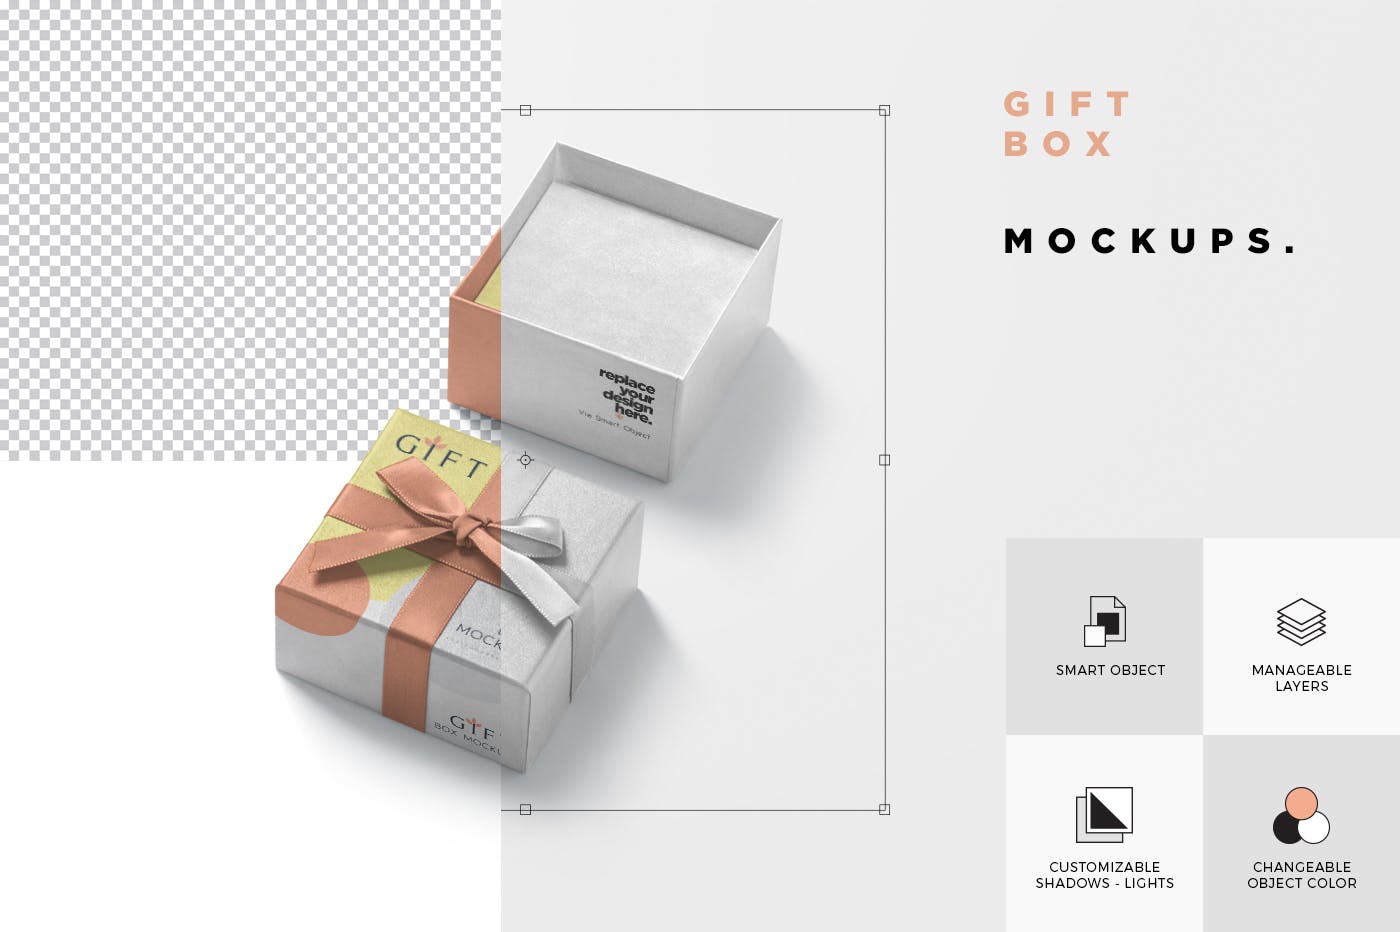 高档礼品包装盒外观设计样机模板 Gift Box Mockups插图(3)